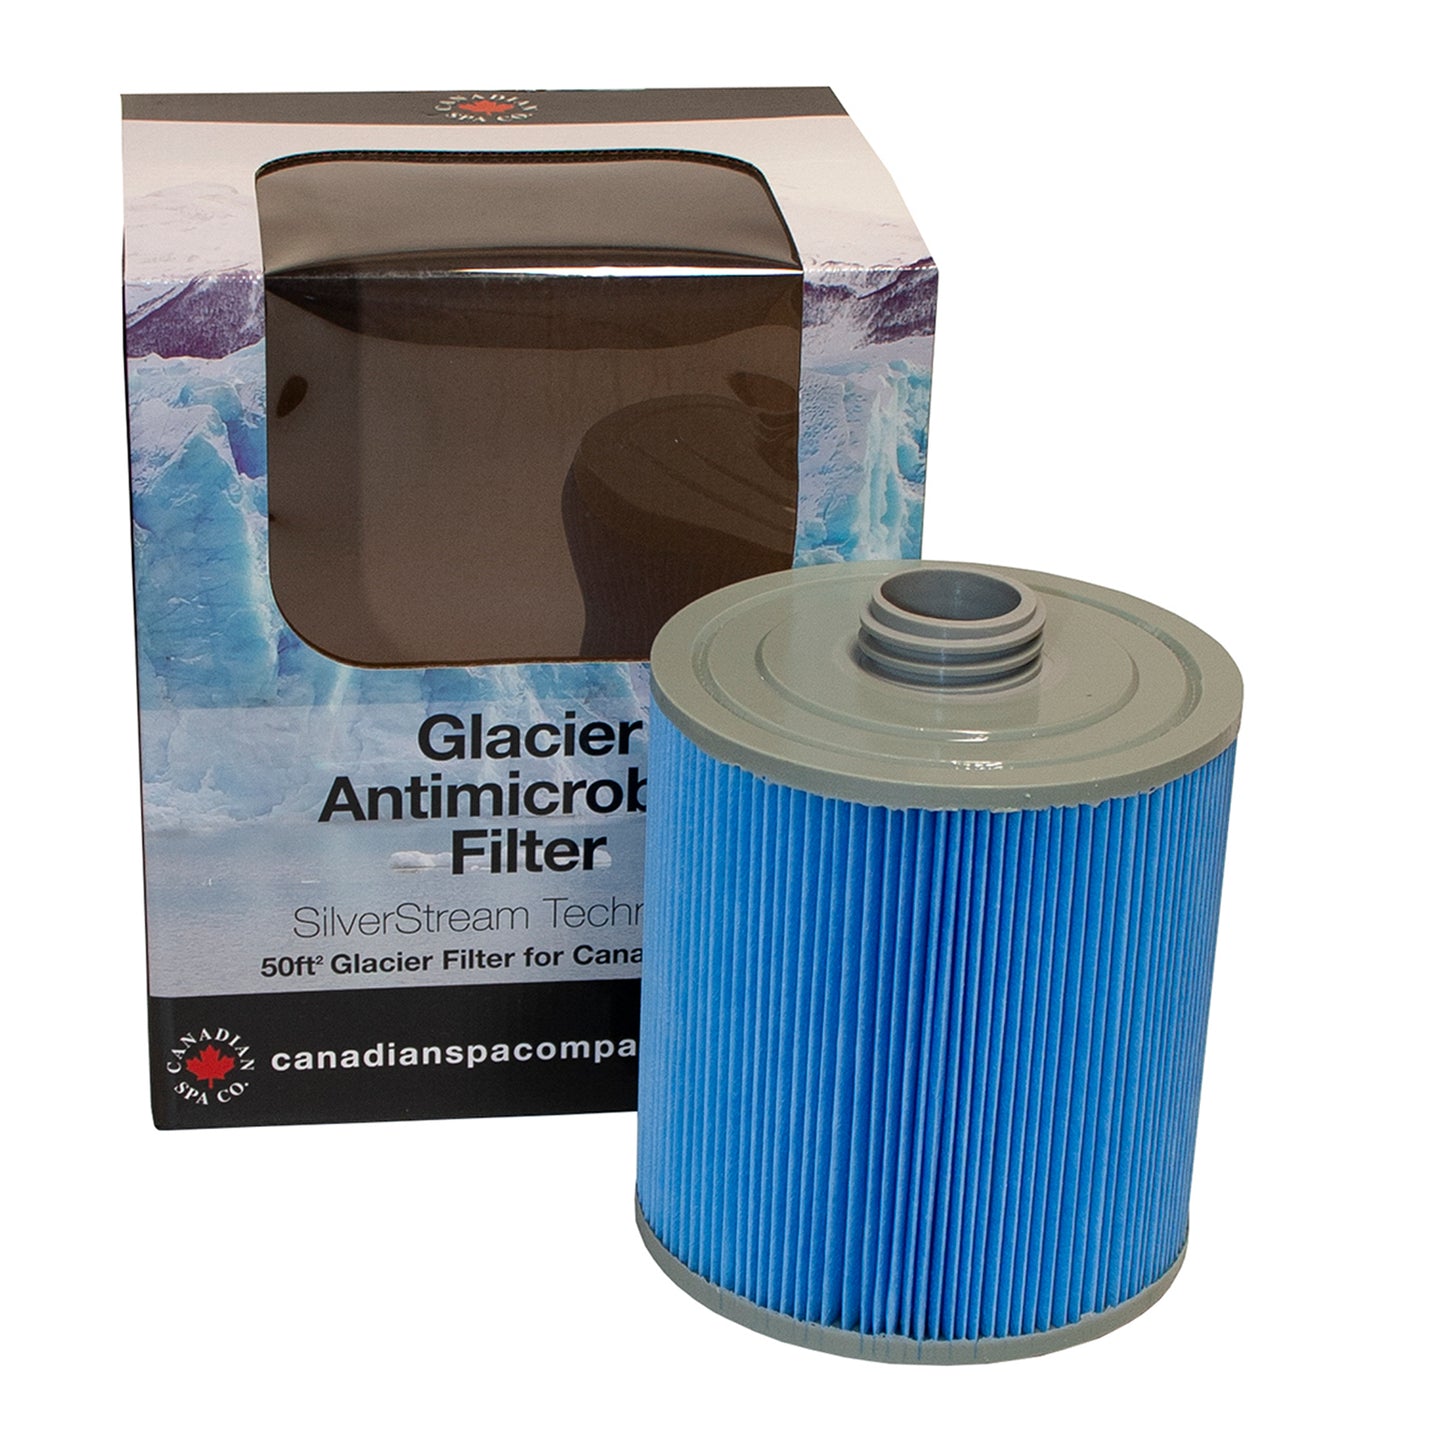 Glacier Silverstream Filter